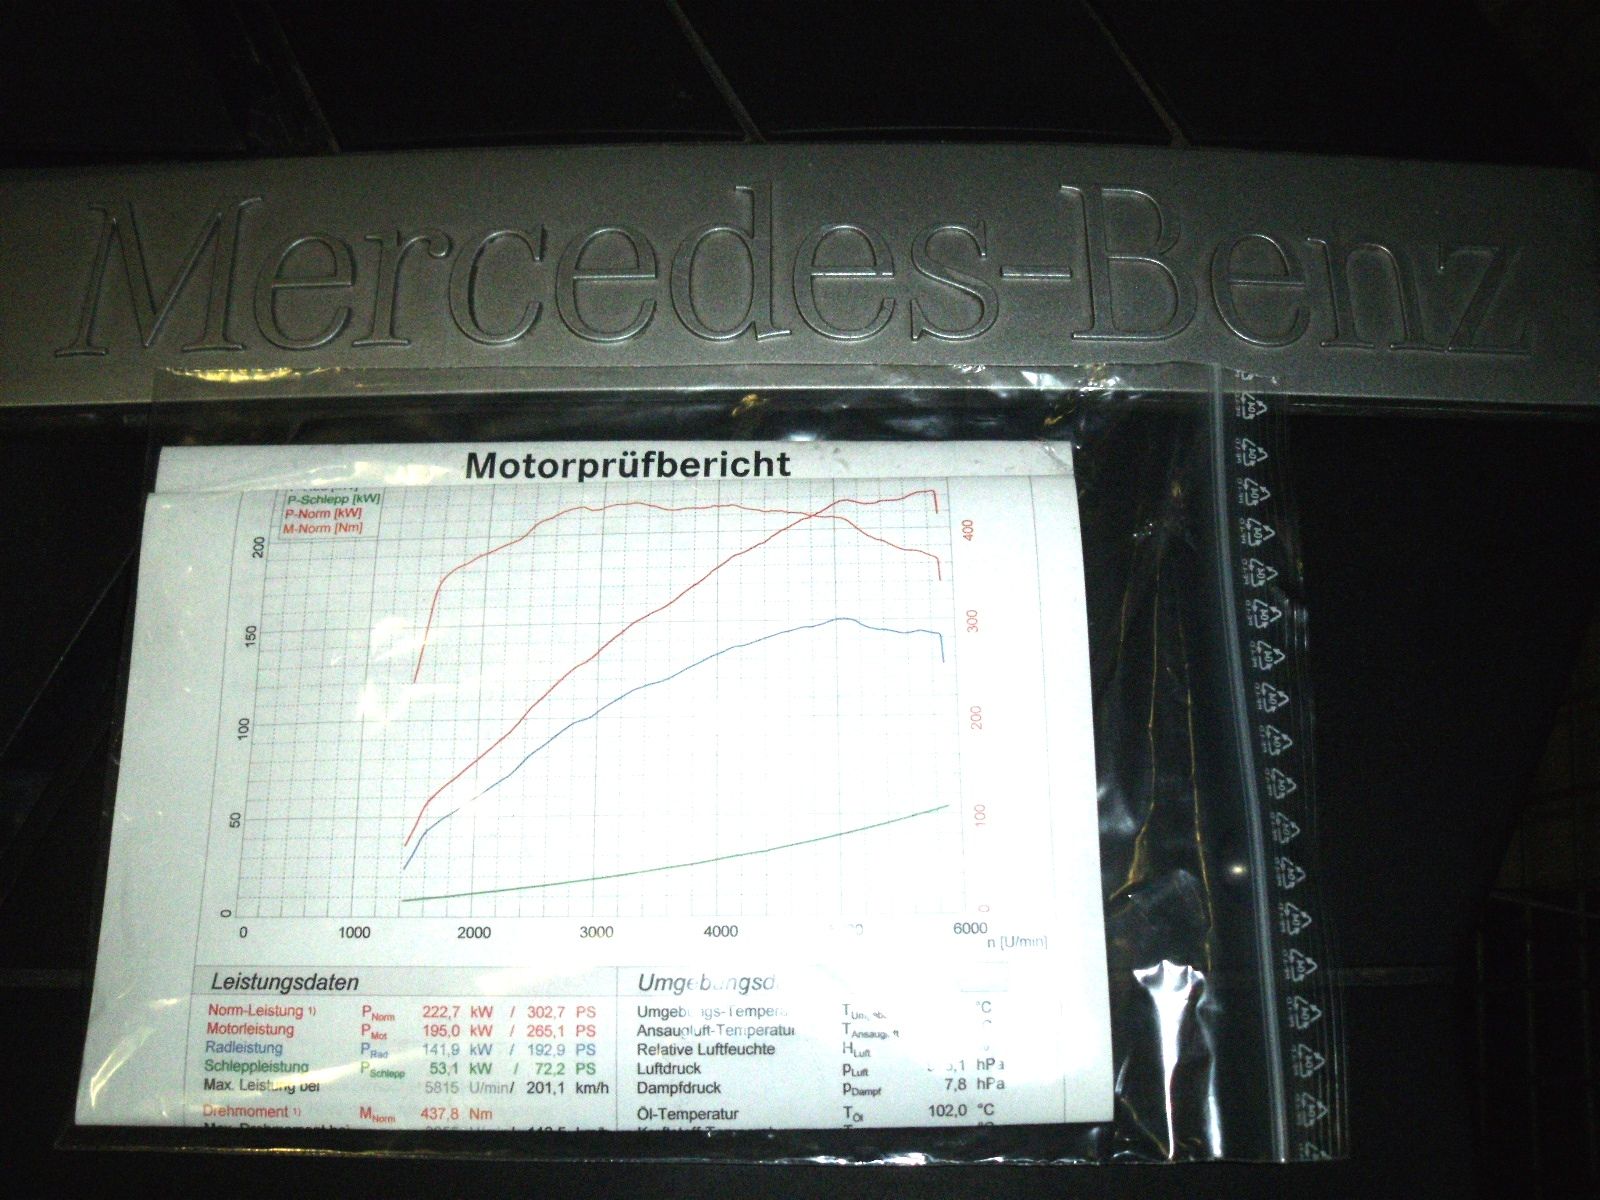 Mercedes Benz Motor Benzin M 113 967 225 kW 306 PS Euro 4 Norm V8 500